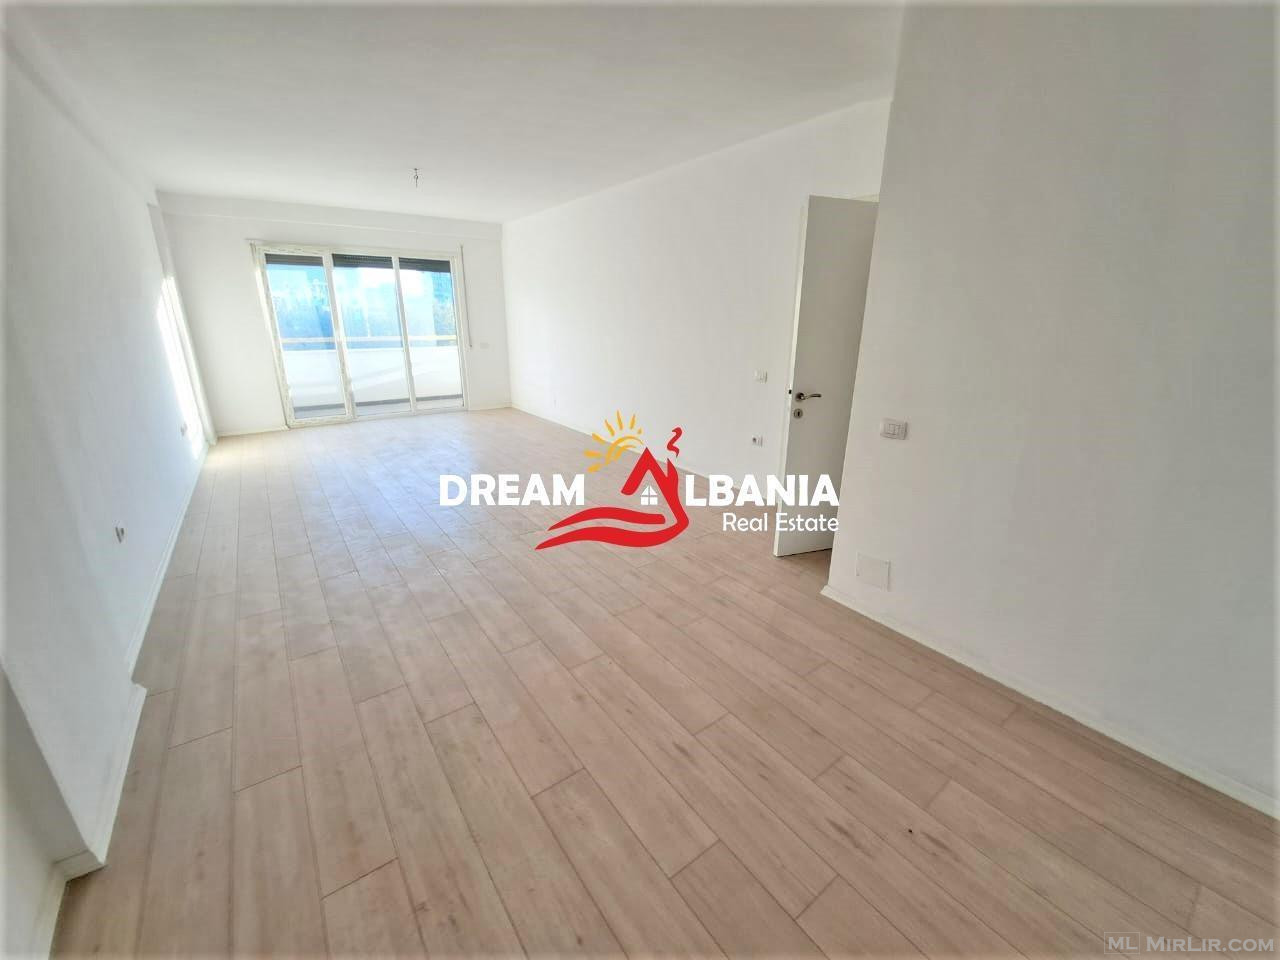 Apartament 1+1 ne shitje ne rrugen Dritan Hoxha, ID 4111460.